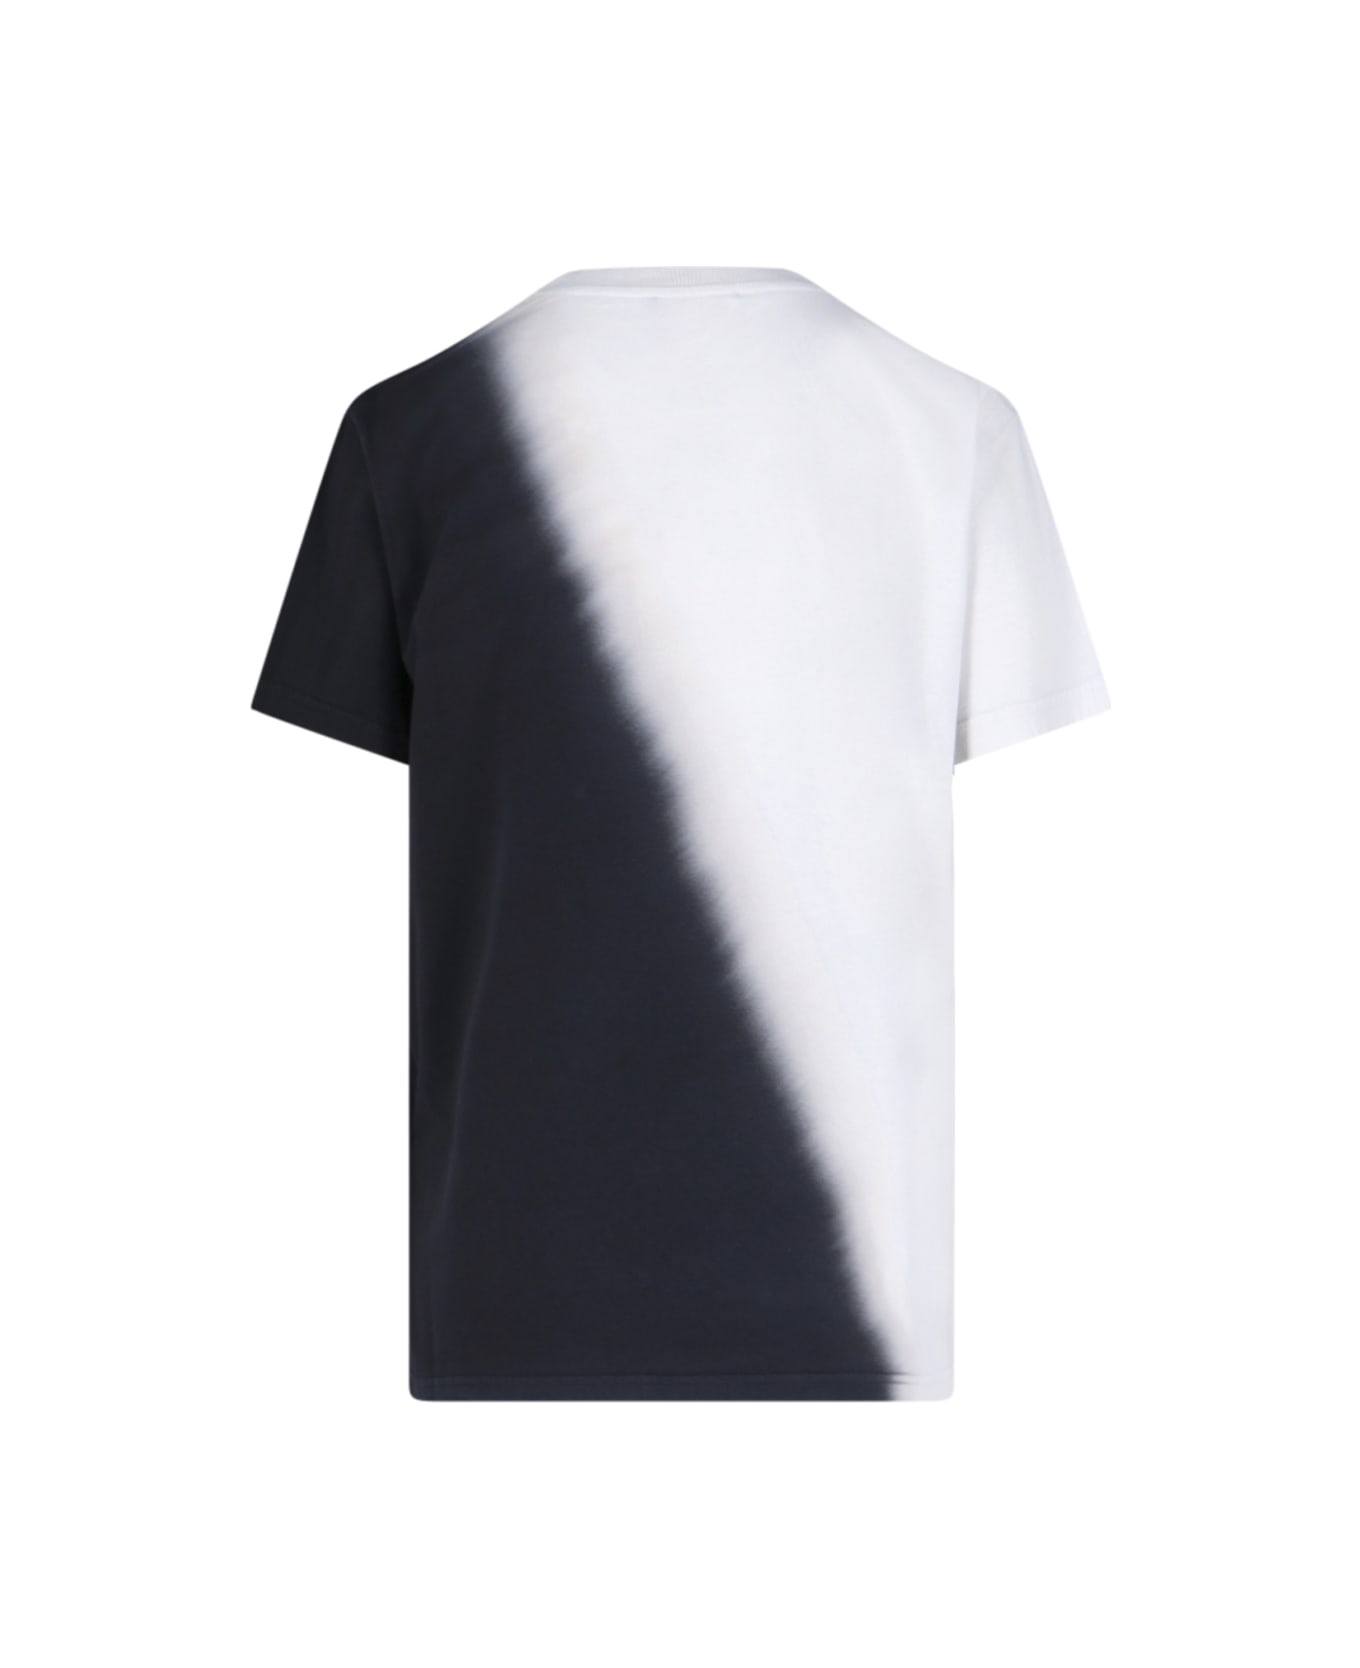 Chloé Printed T-shirt - White